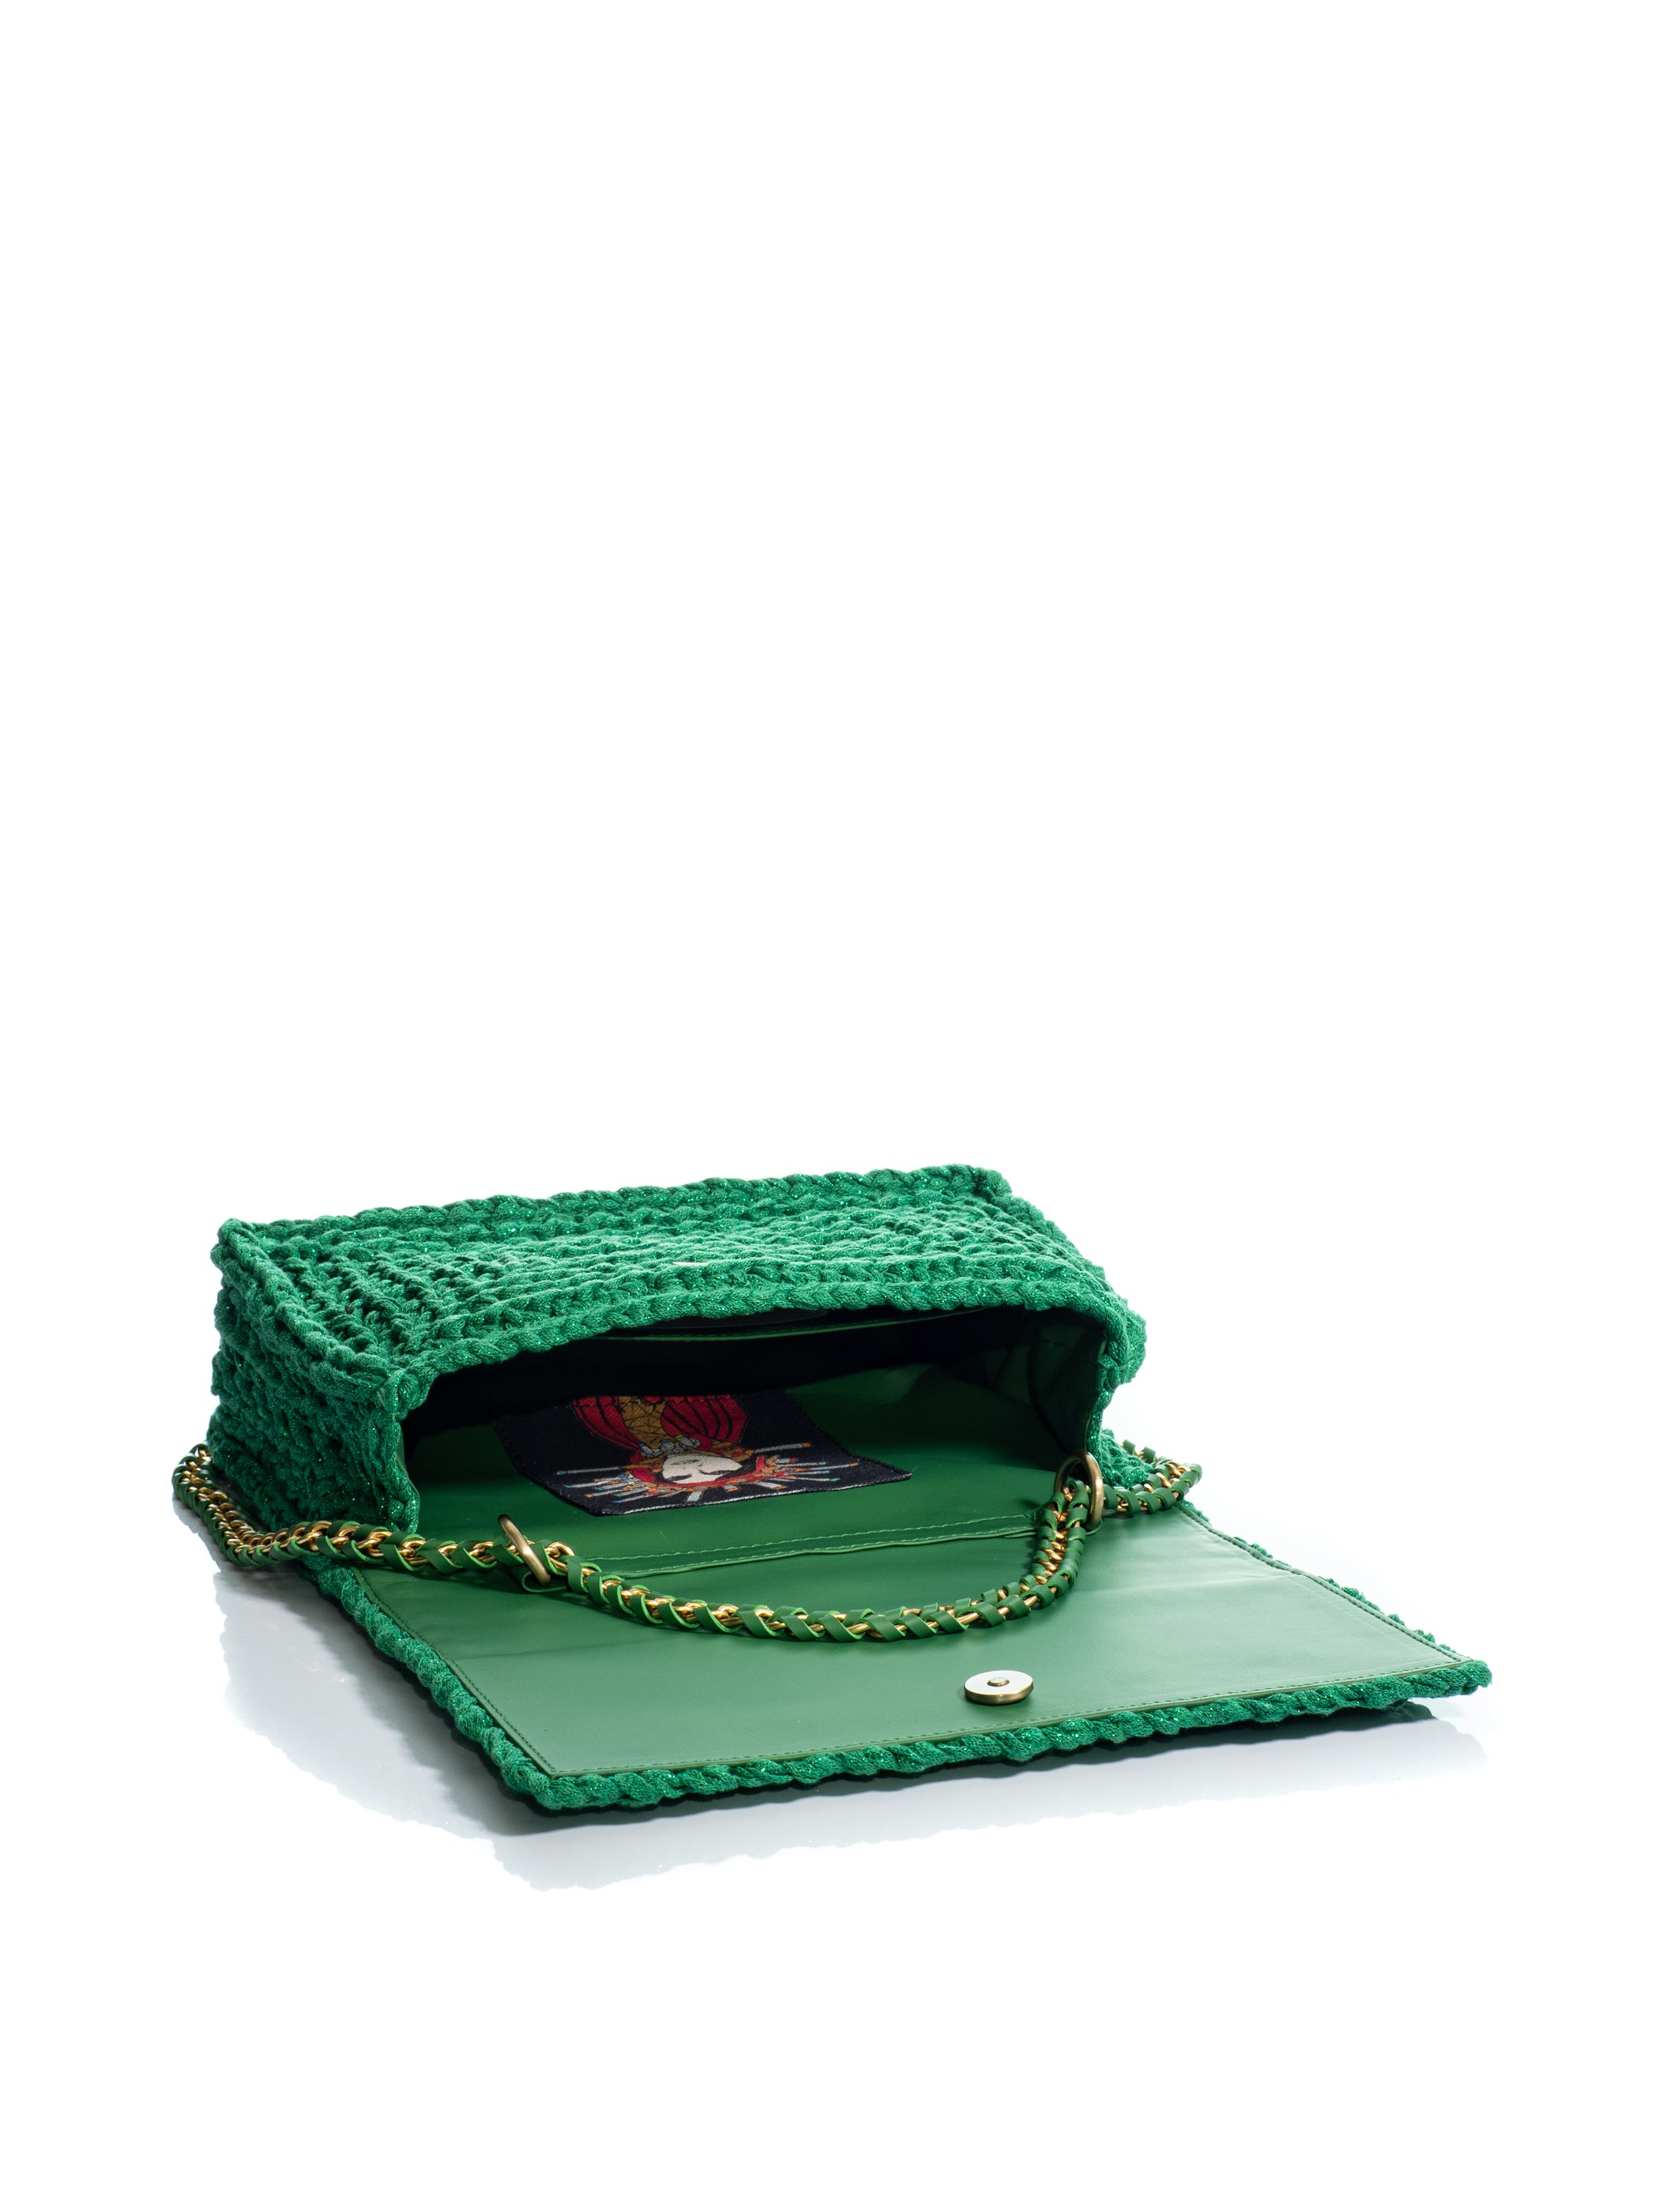 Crochet Sparkling Green